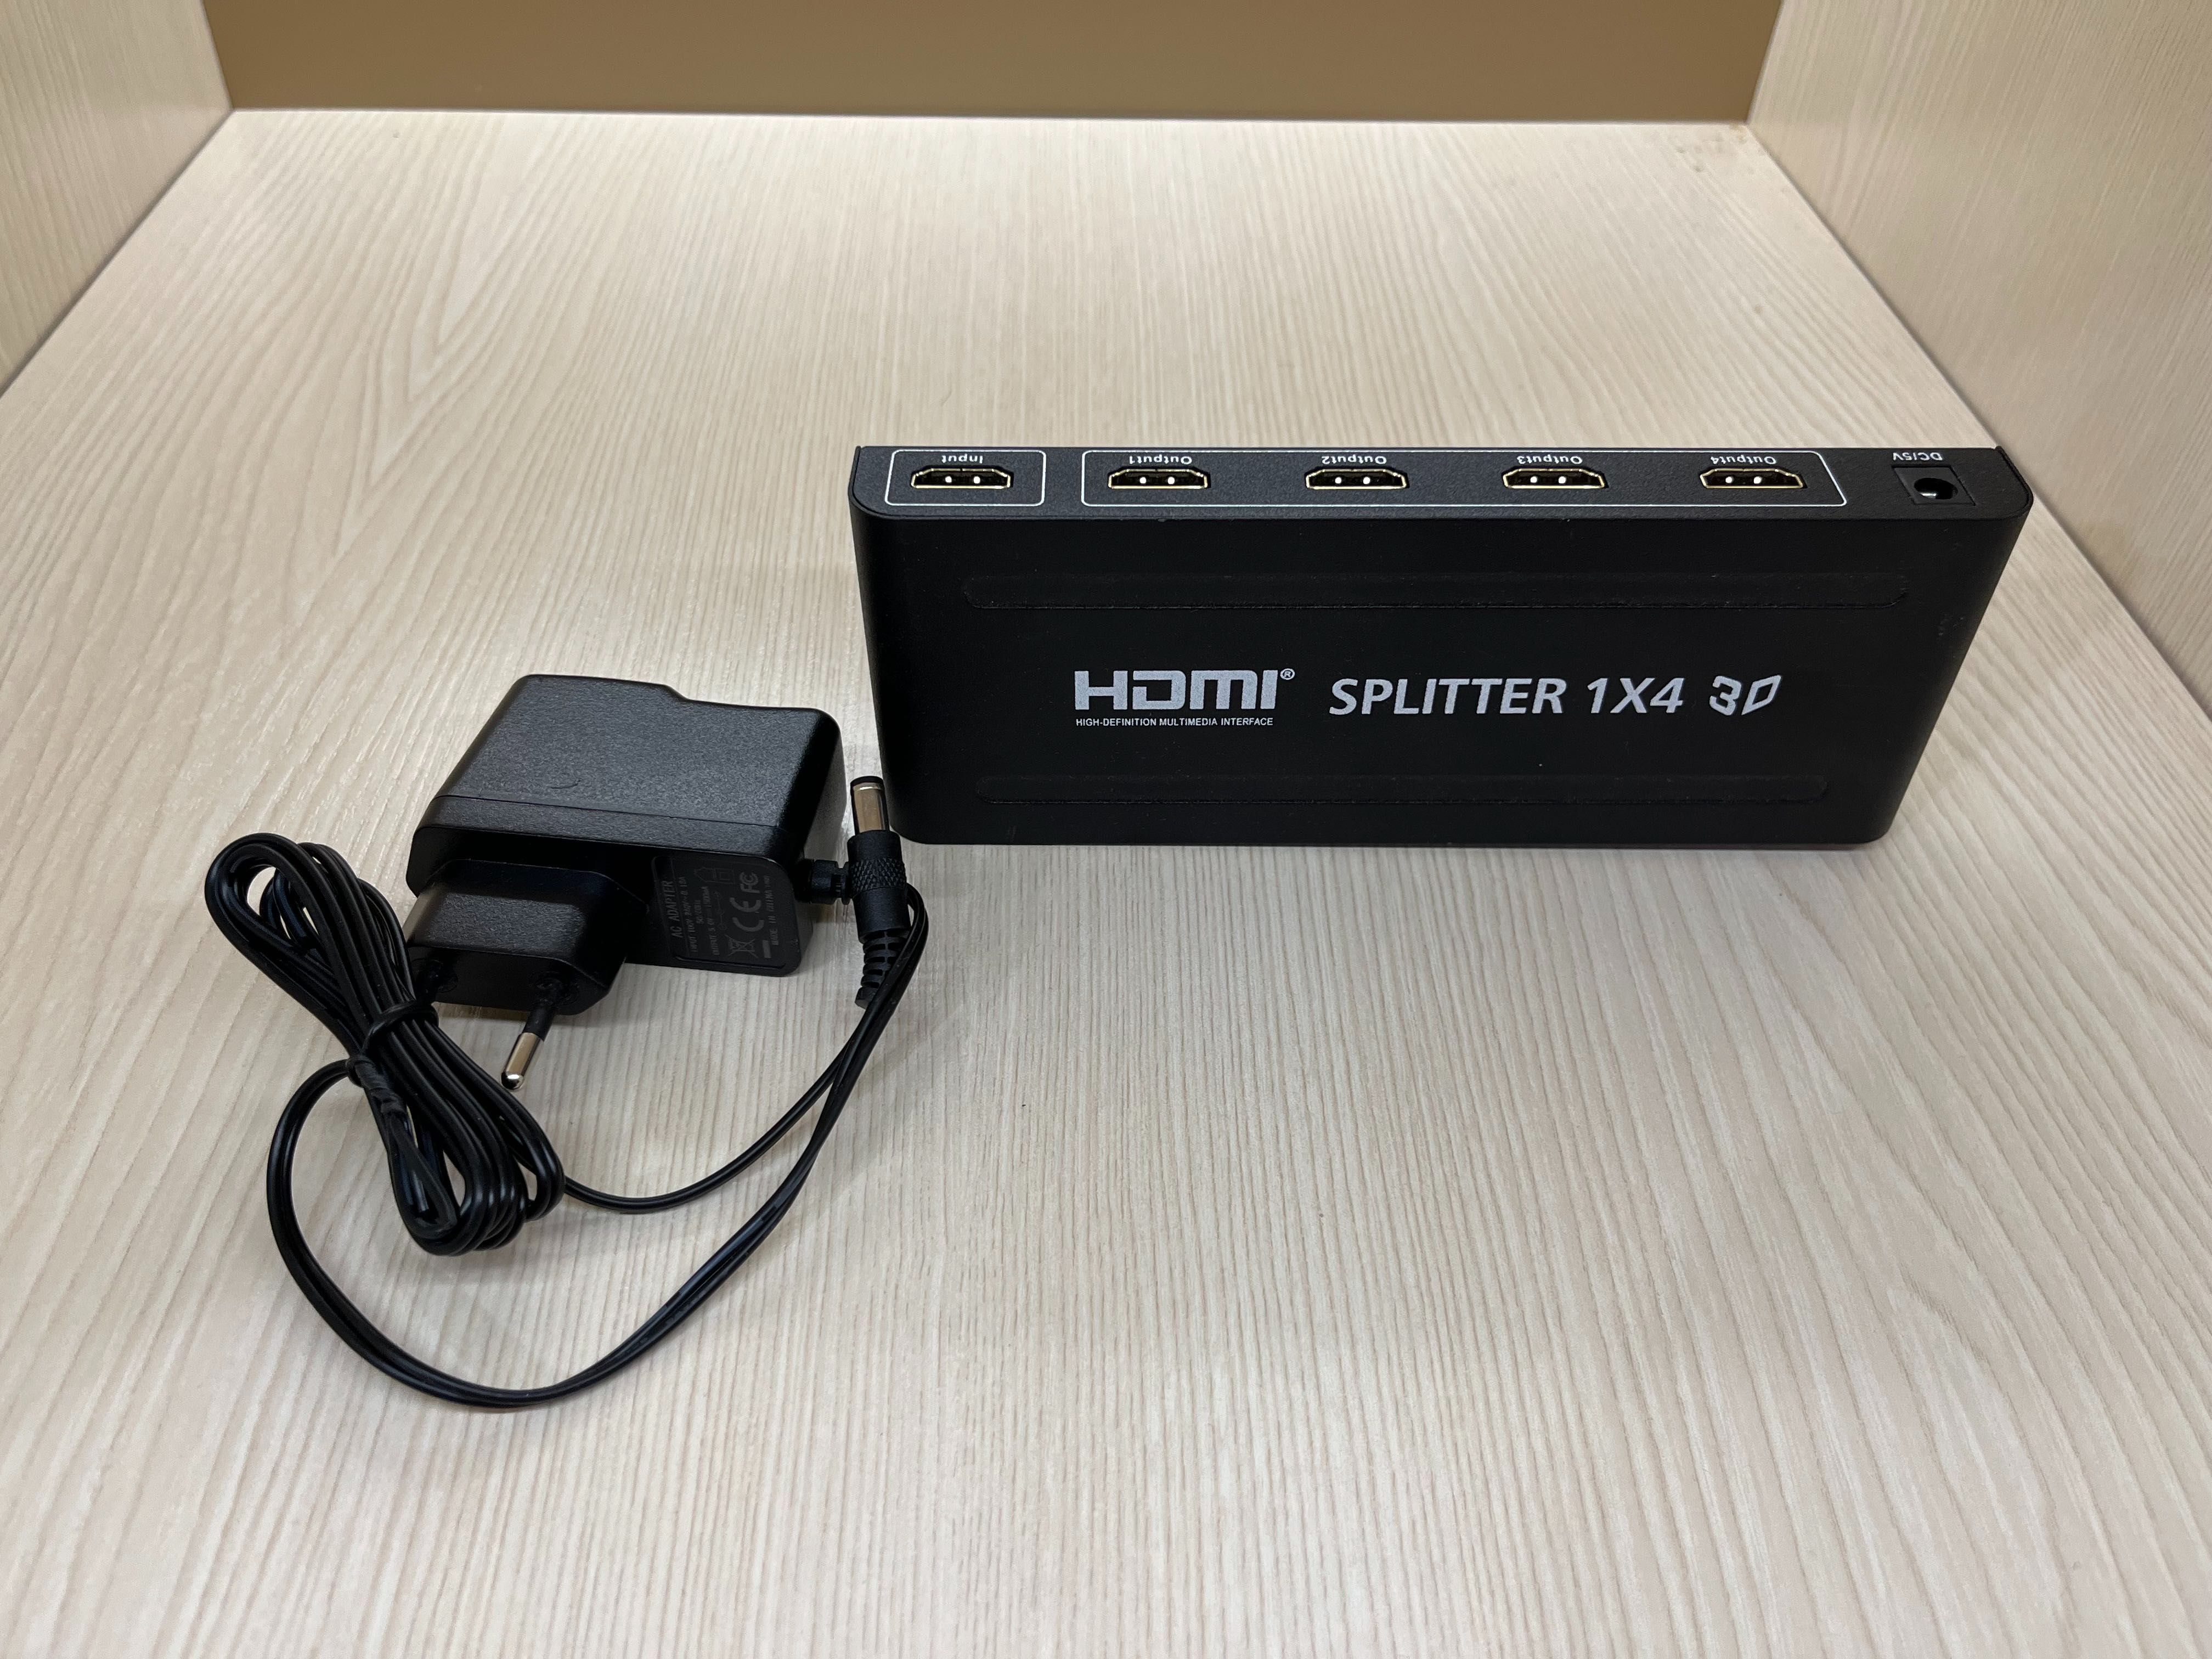 HDMI Splitter 1x4 obrazu i dźwięku - używany + gratis